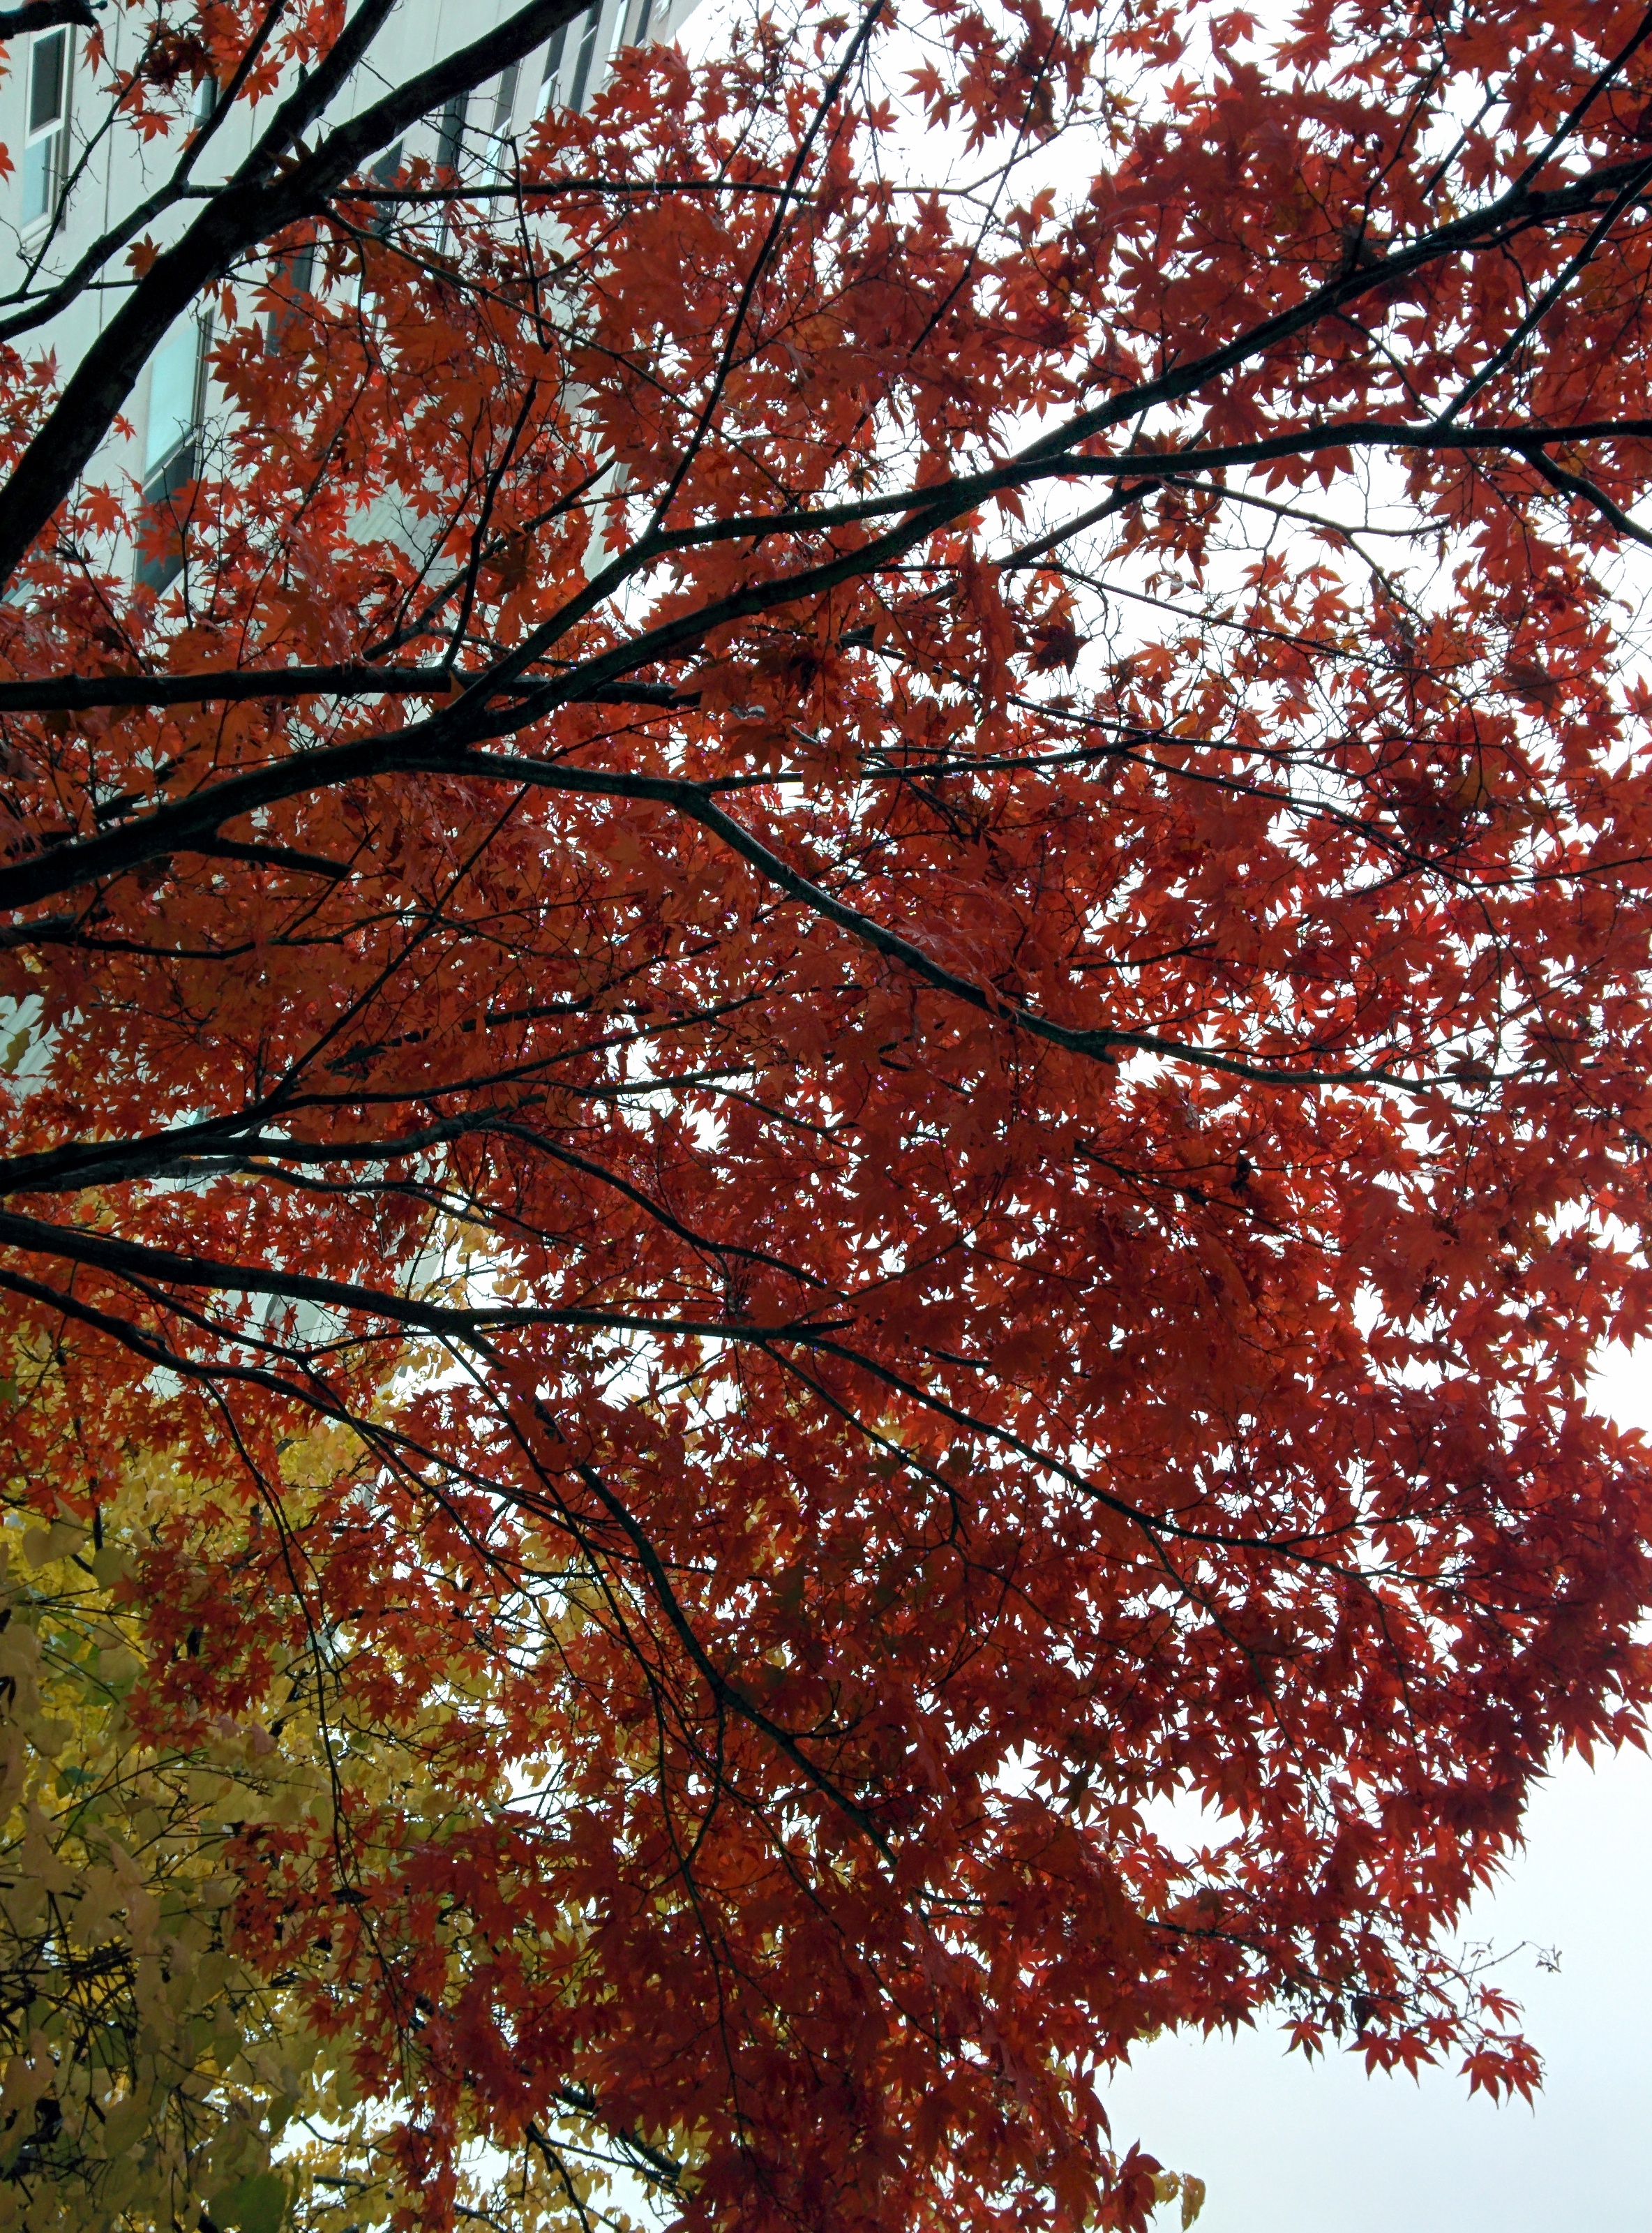 IMG_20151108_125935.jpg 비오는 날 단풍나무의 붉은색 . 단풍(丹楓)